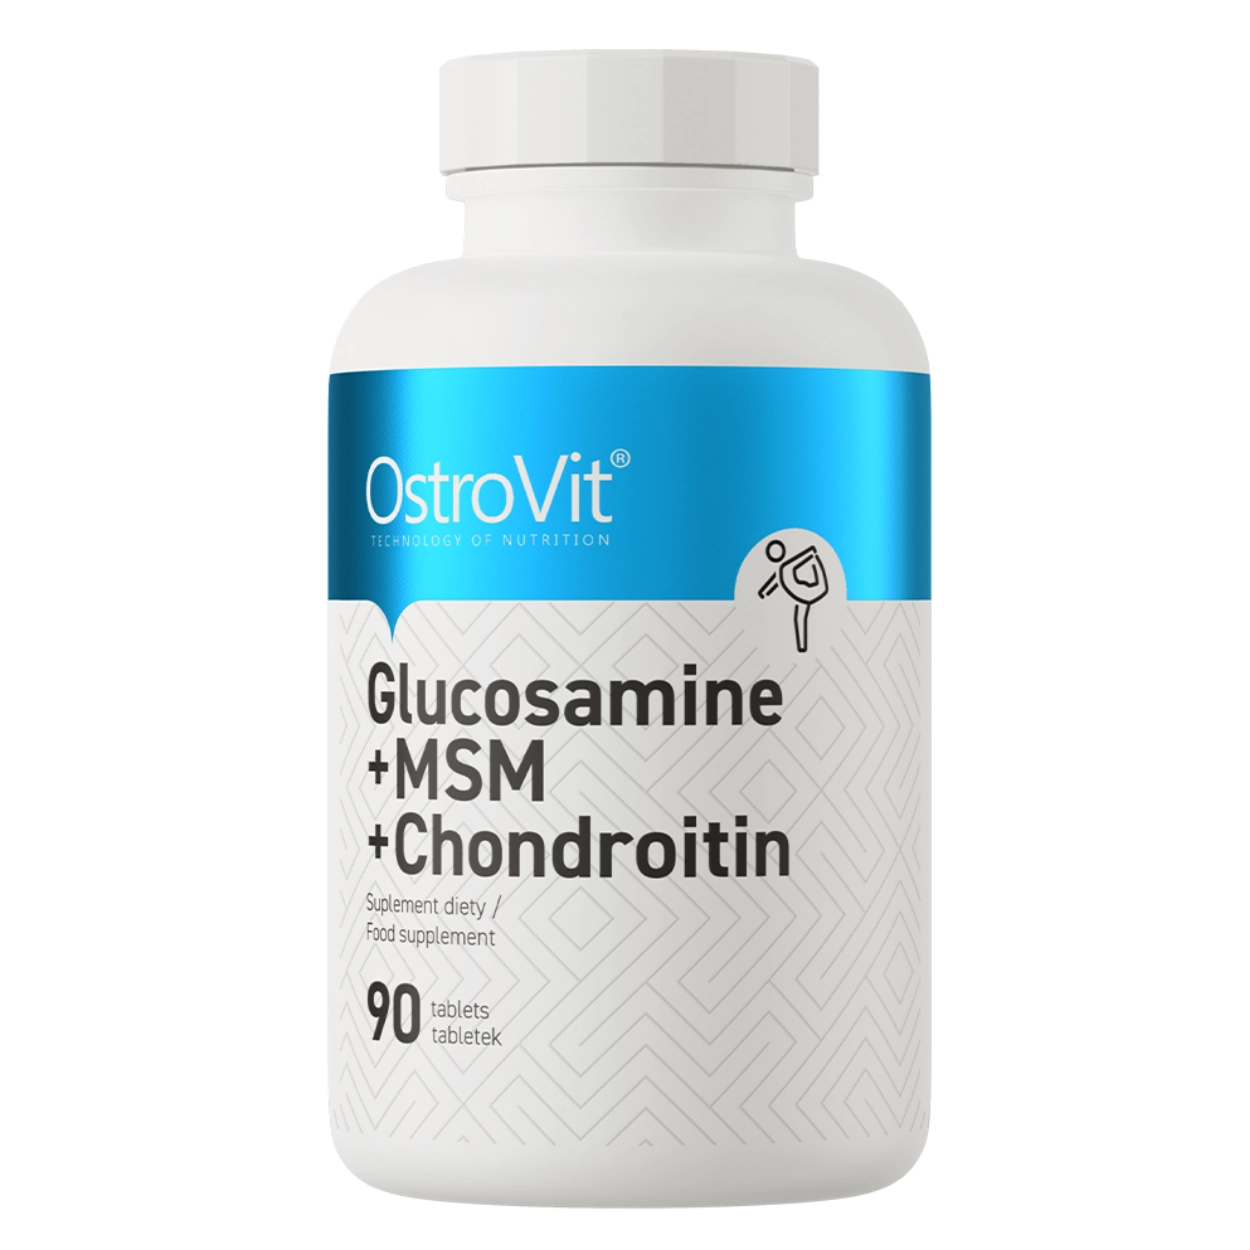 Opakowanie białe z niebieskim paskiem suplementu diety OstroVit, zawierające Glukozaminę, MSM i Chondroitynę, 90 tabletek.